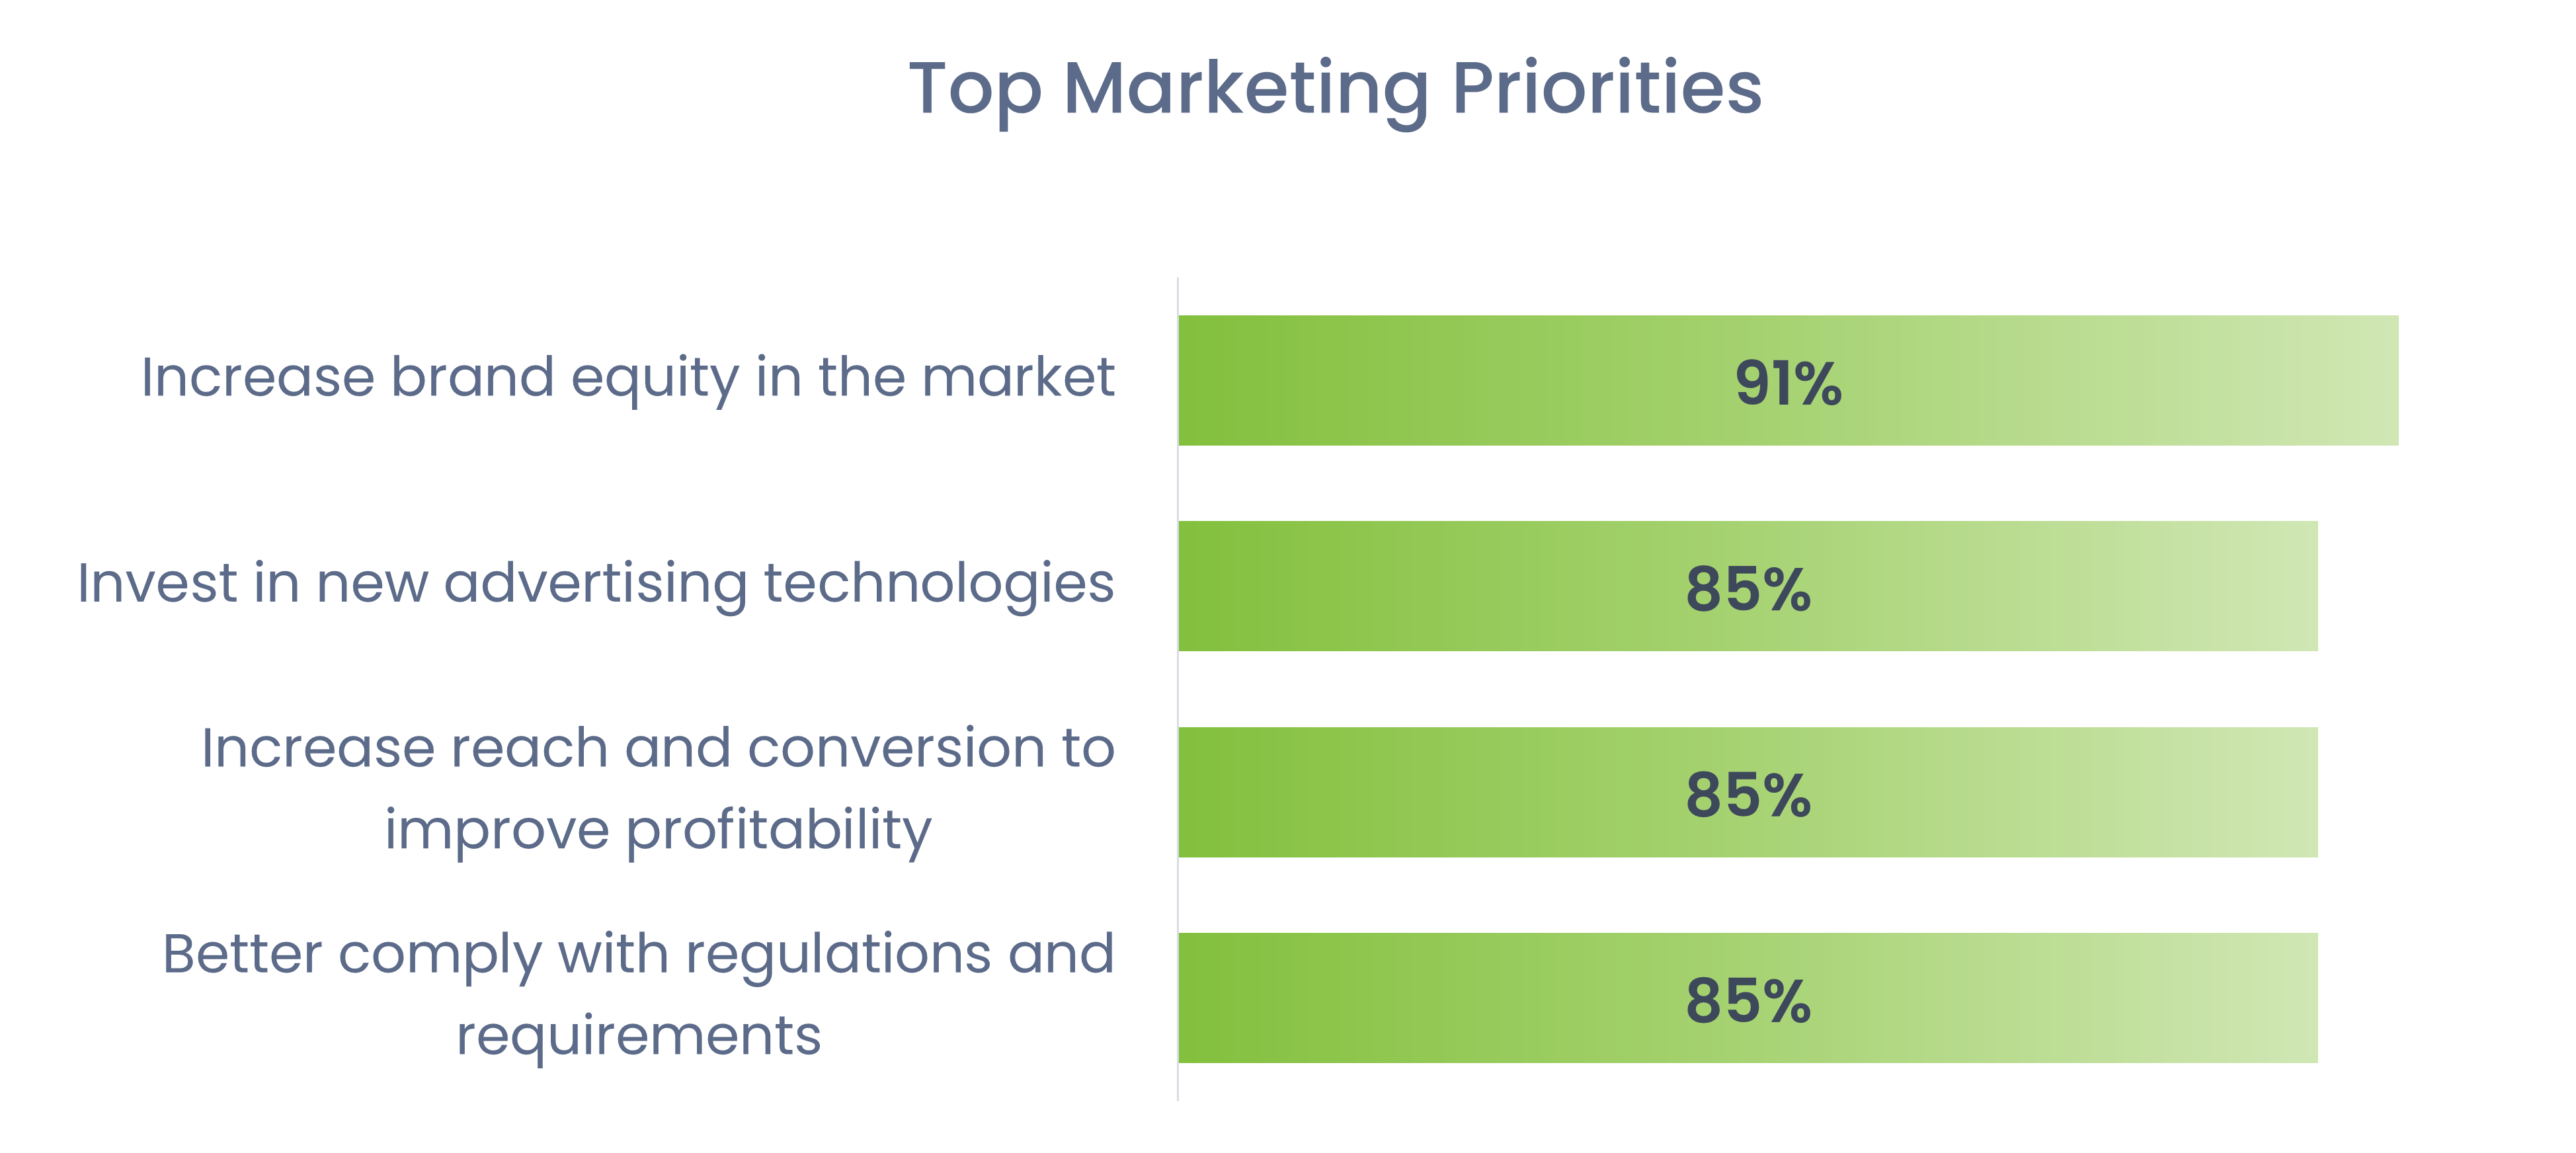 Top Marketing Priorities